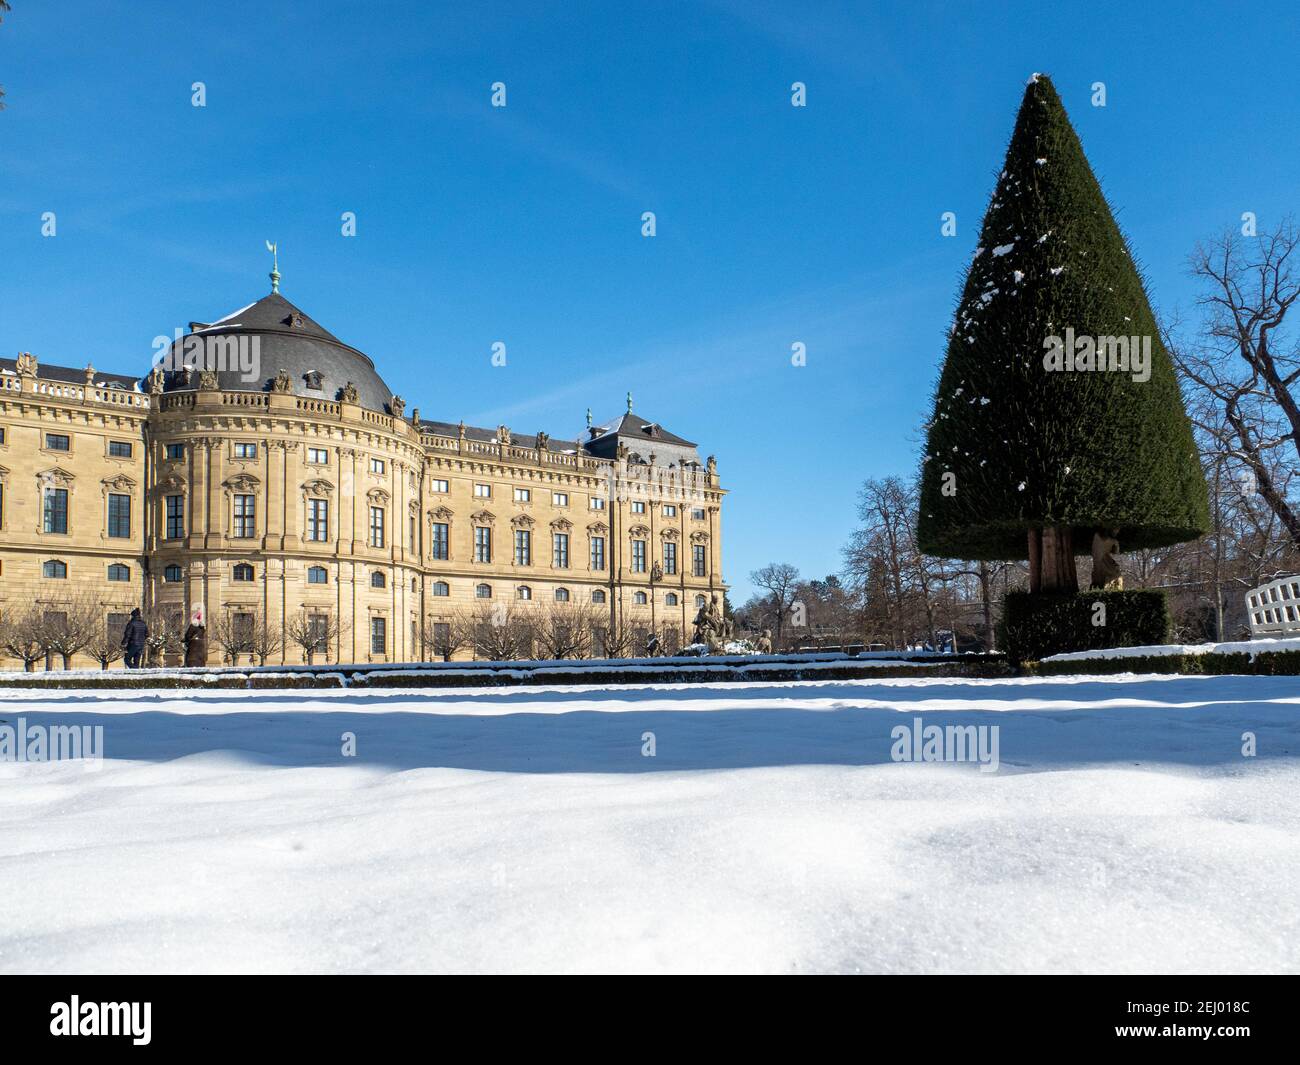 la residenza di wuerzburg, patrimonio mondiale dell'unesco, in inverno in una bella giornata di sole Foto Stock